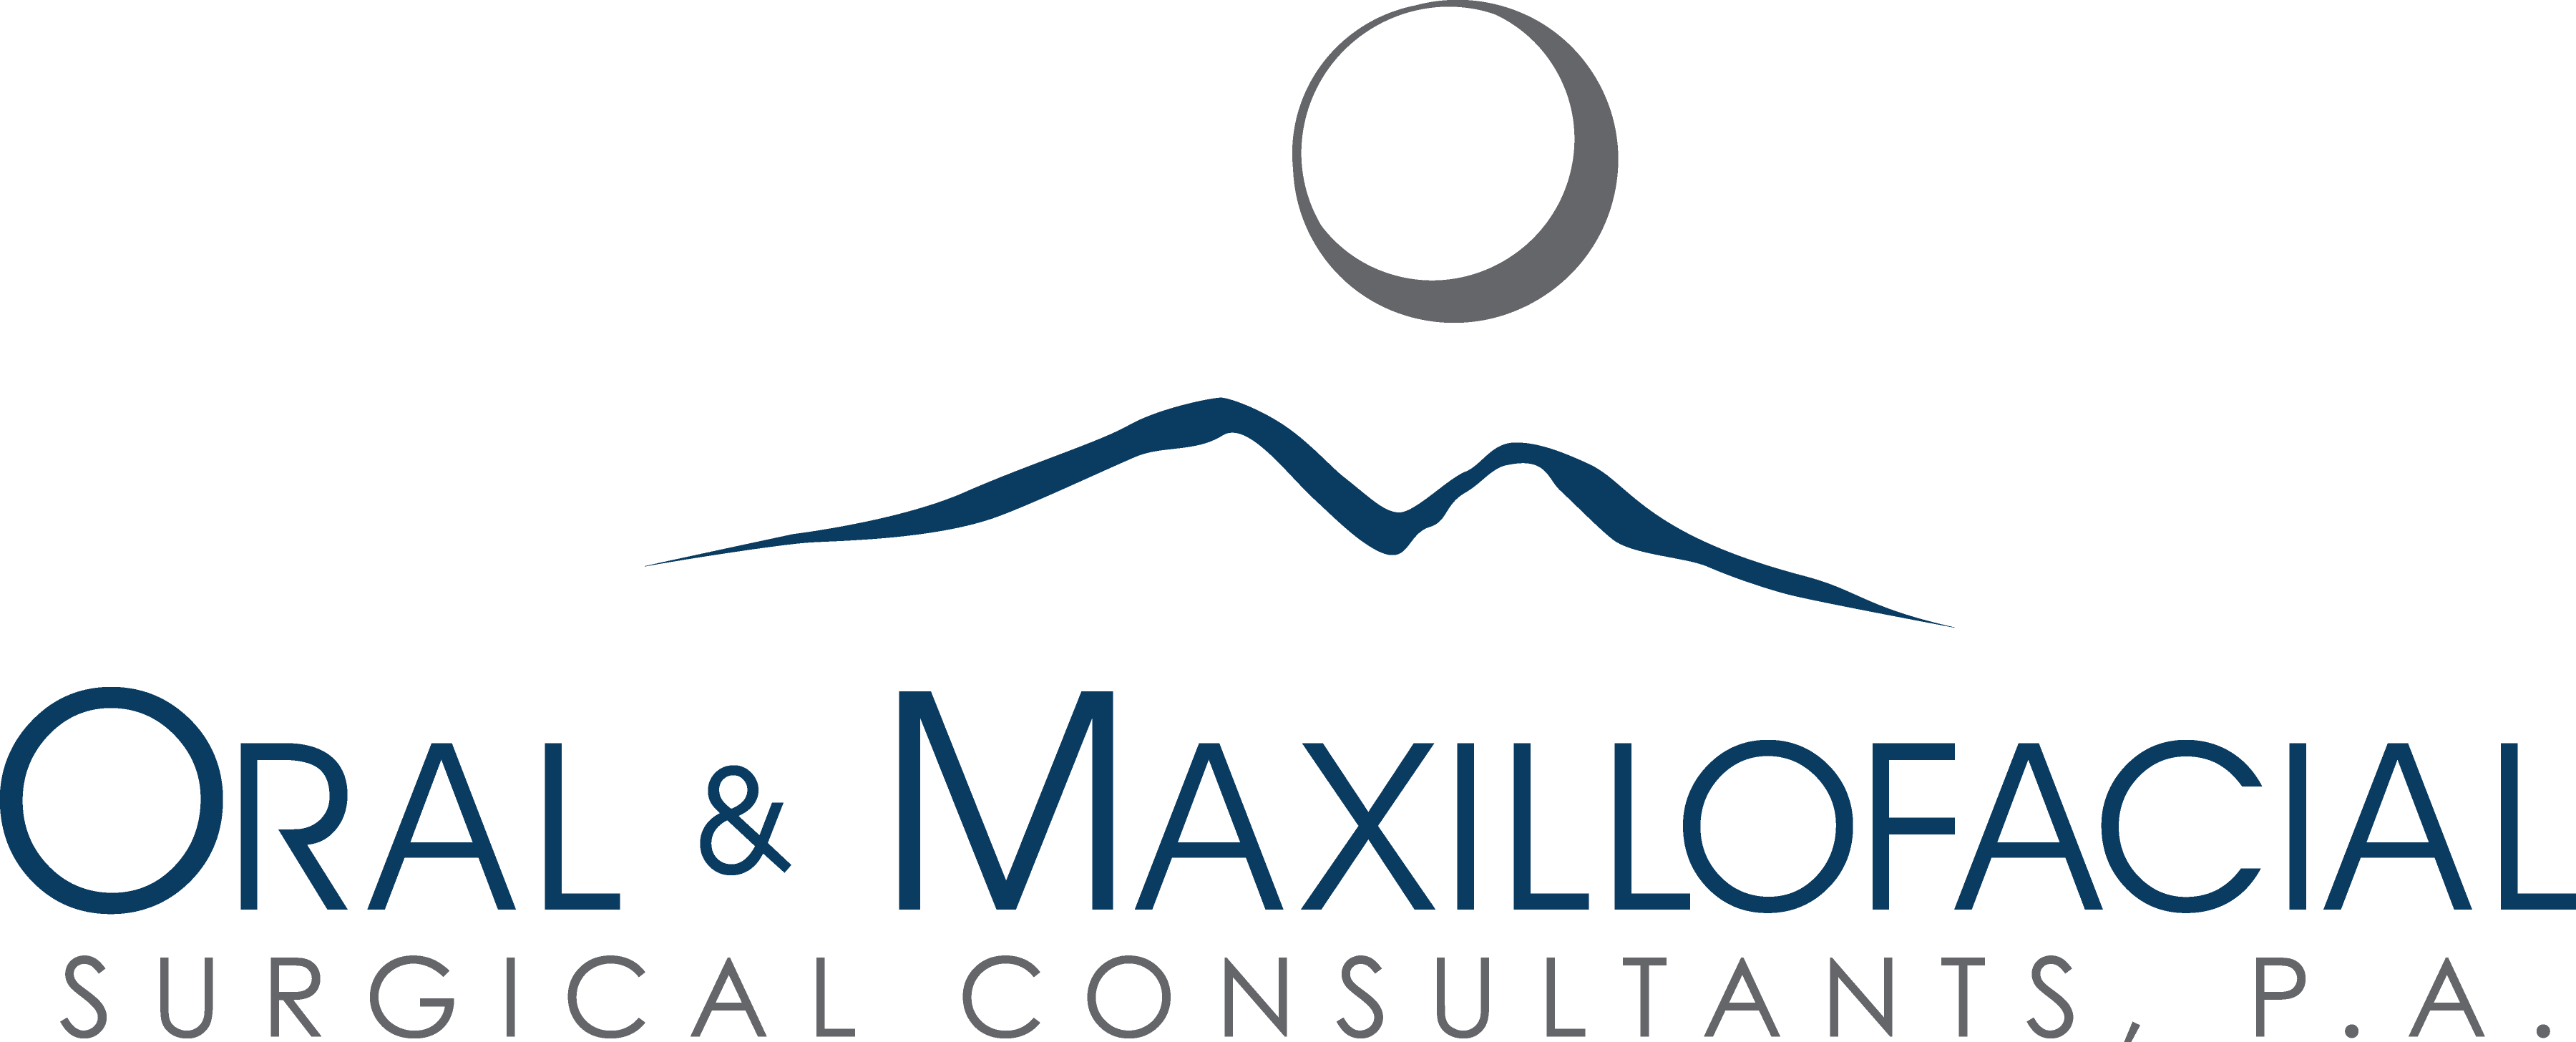 Oral & Maxillofacial Surgical Consultants